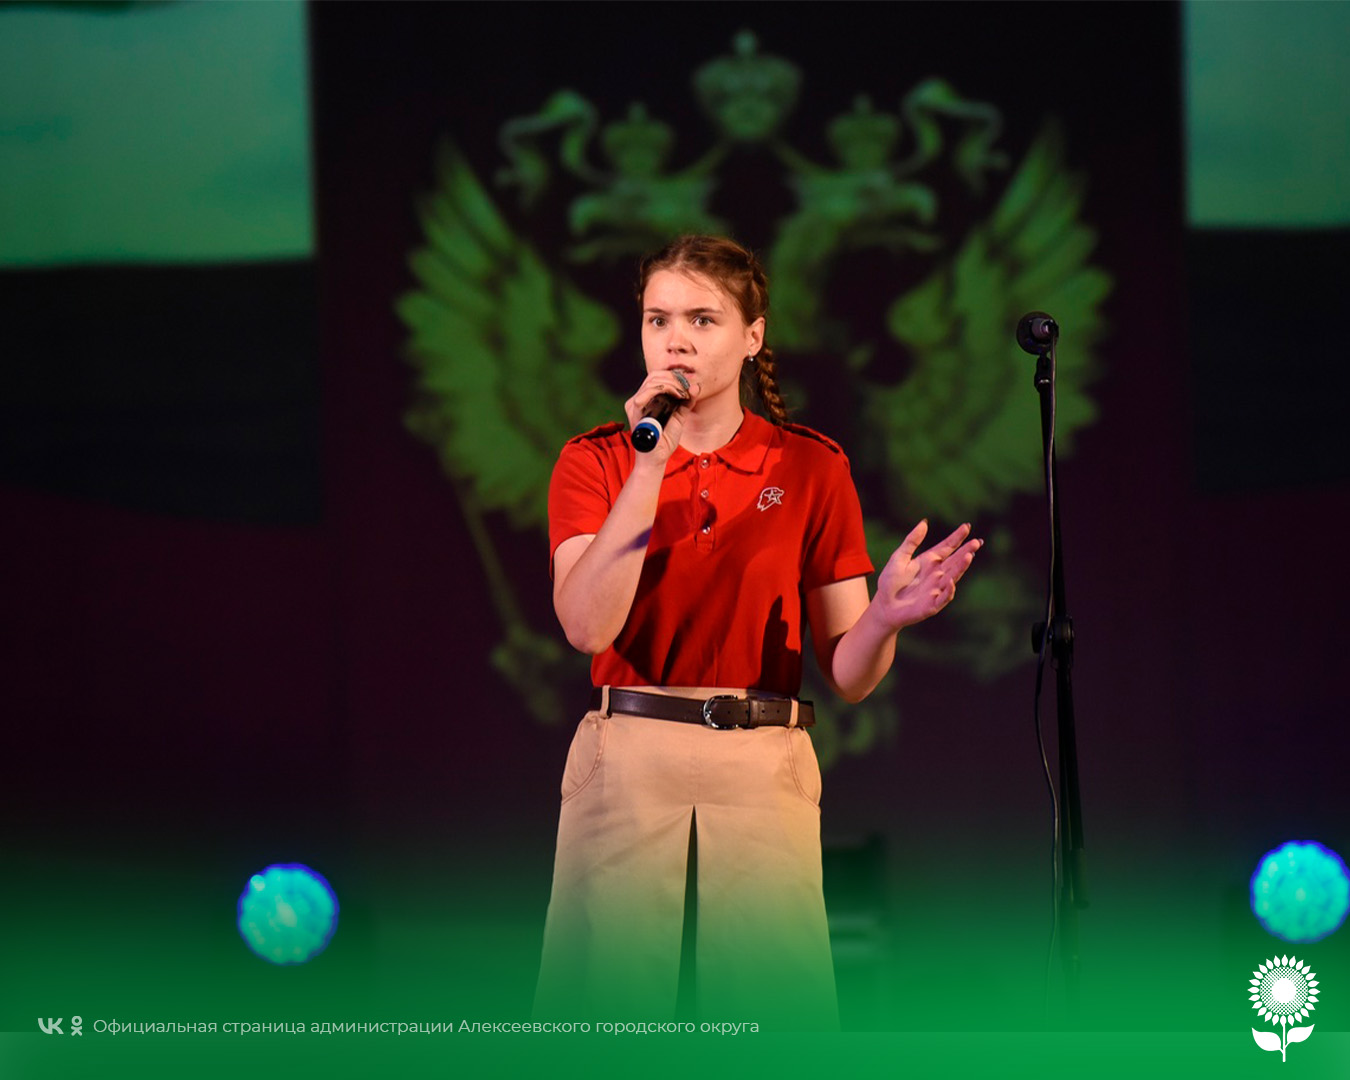 В стенах Центра культурного развития «Солнечный» прошёл фестиваль-конкурс военно-патриотической песни «Голоса героев».